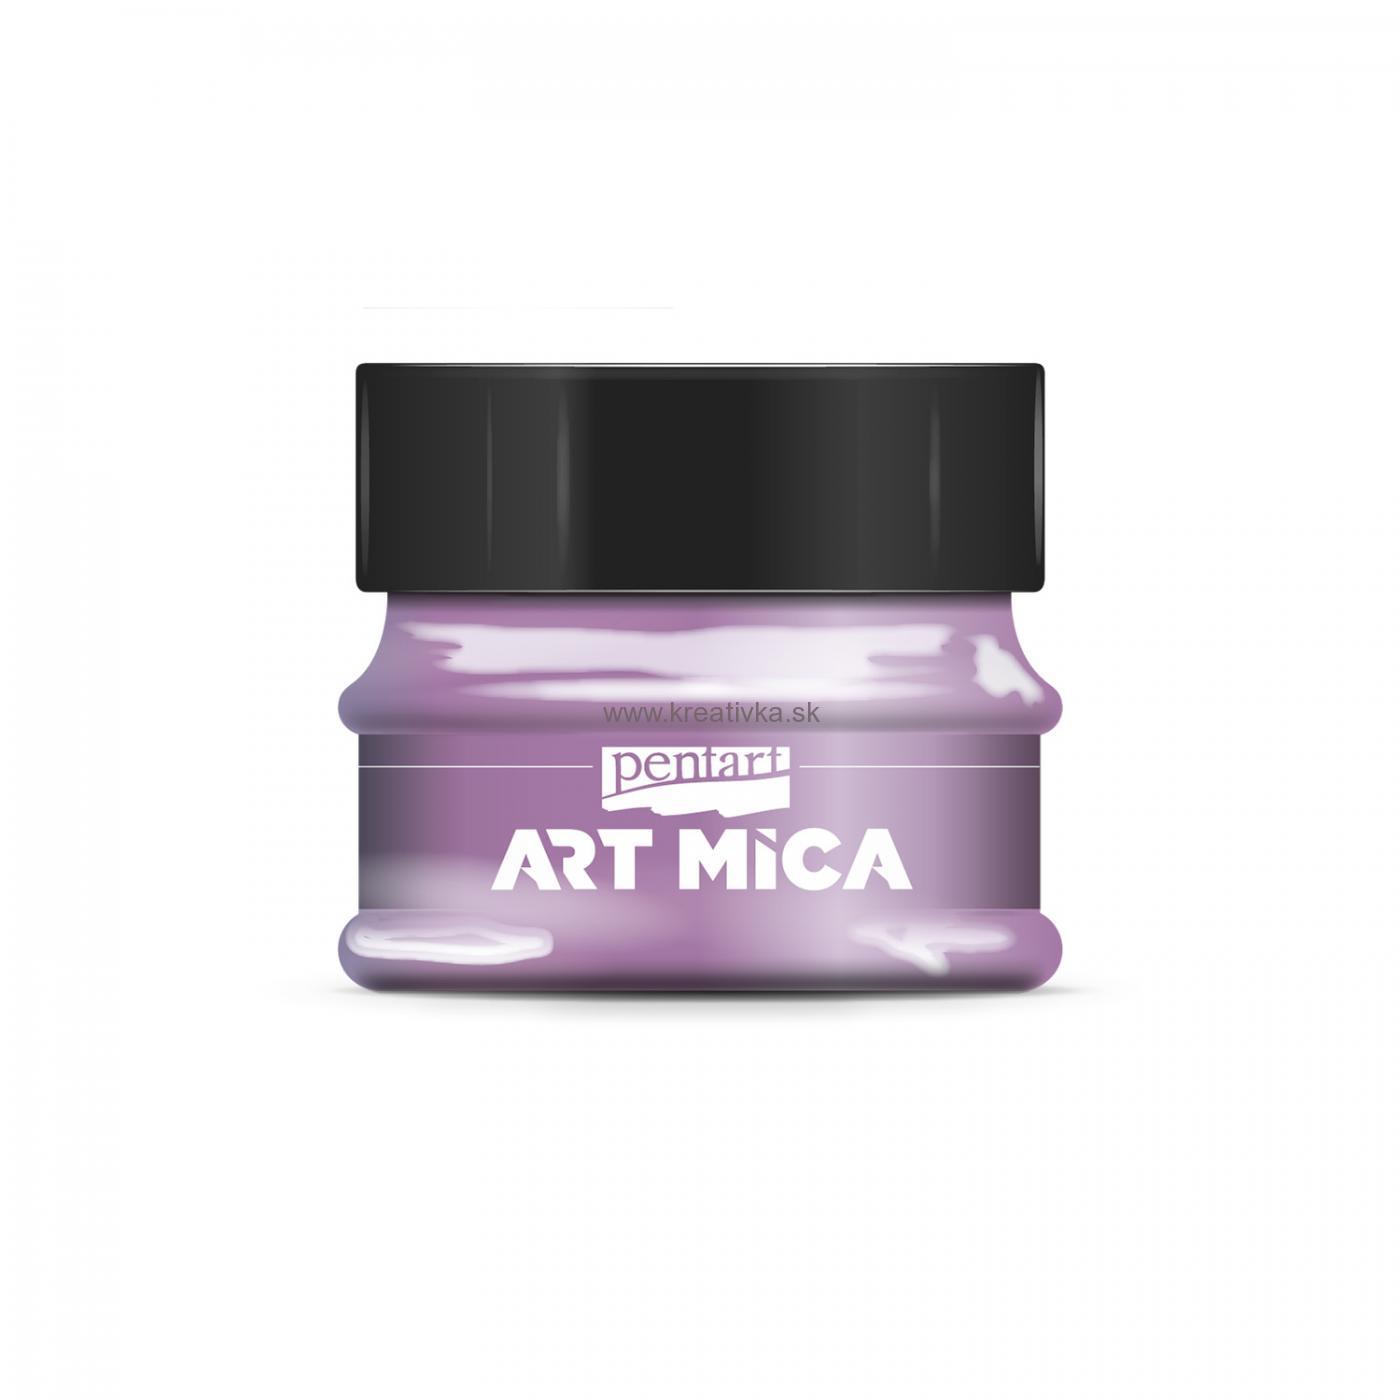 ART MICA minerálny práškový pigment, 9g, fialová